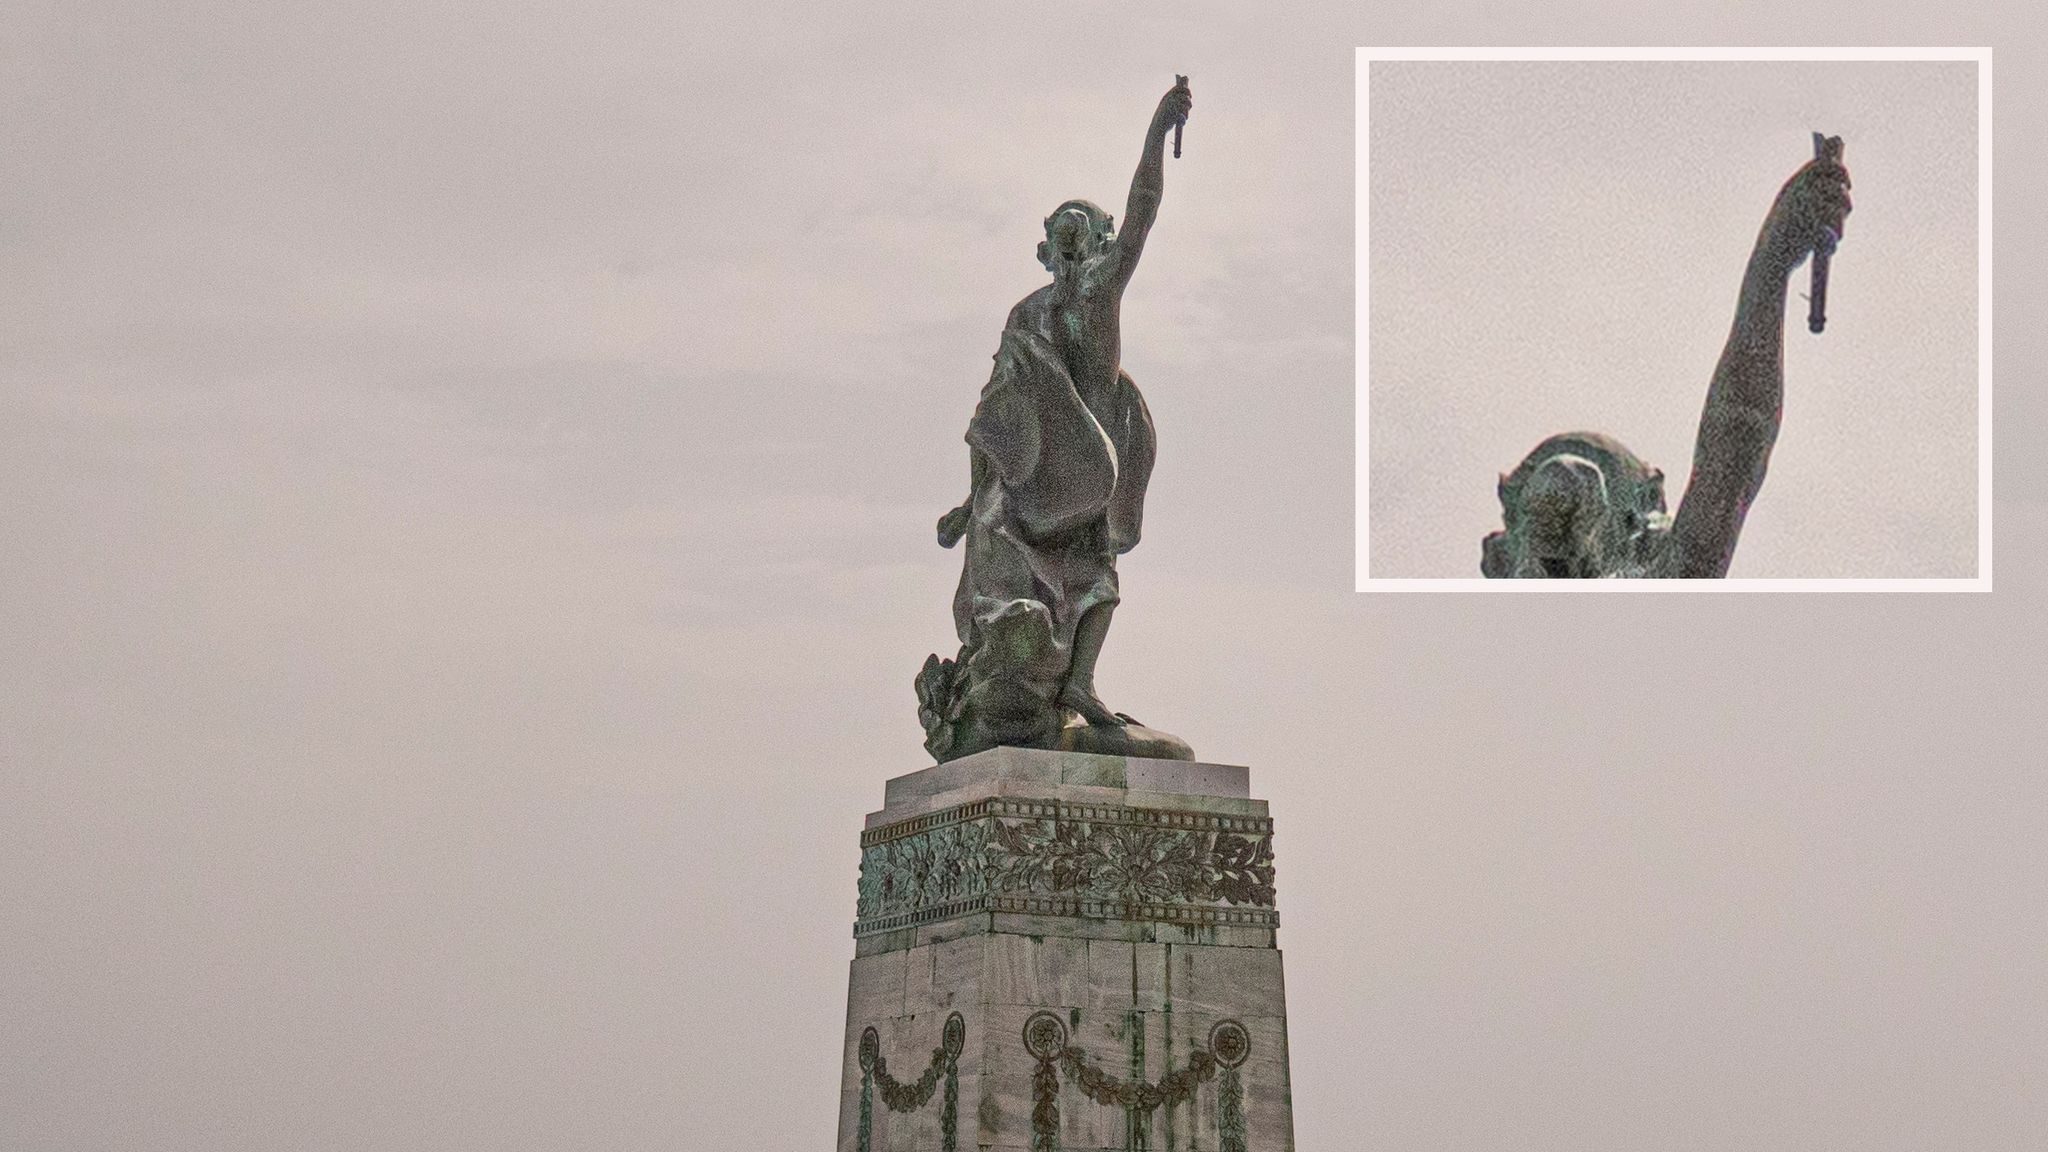 Οι θυελλώδεις νοτιάδες “έκοψαν” τον πυρσό από το Άγαλμα της Ελευθερίας